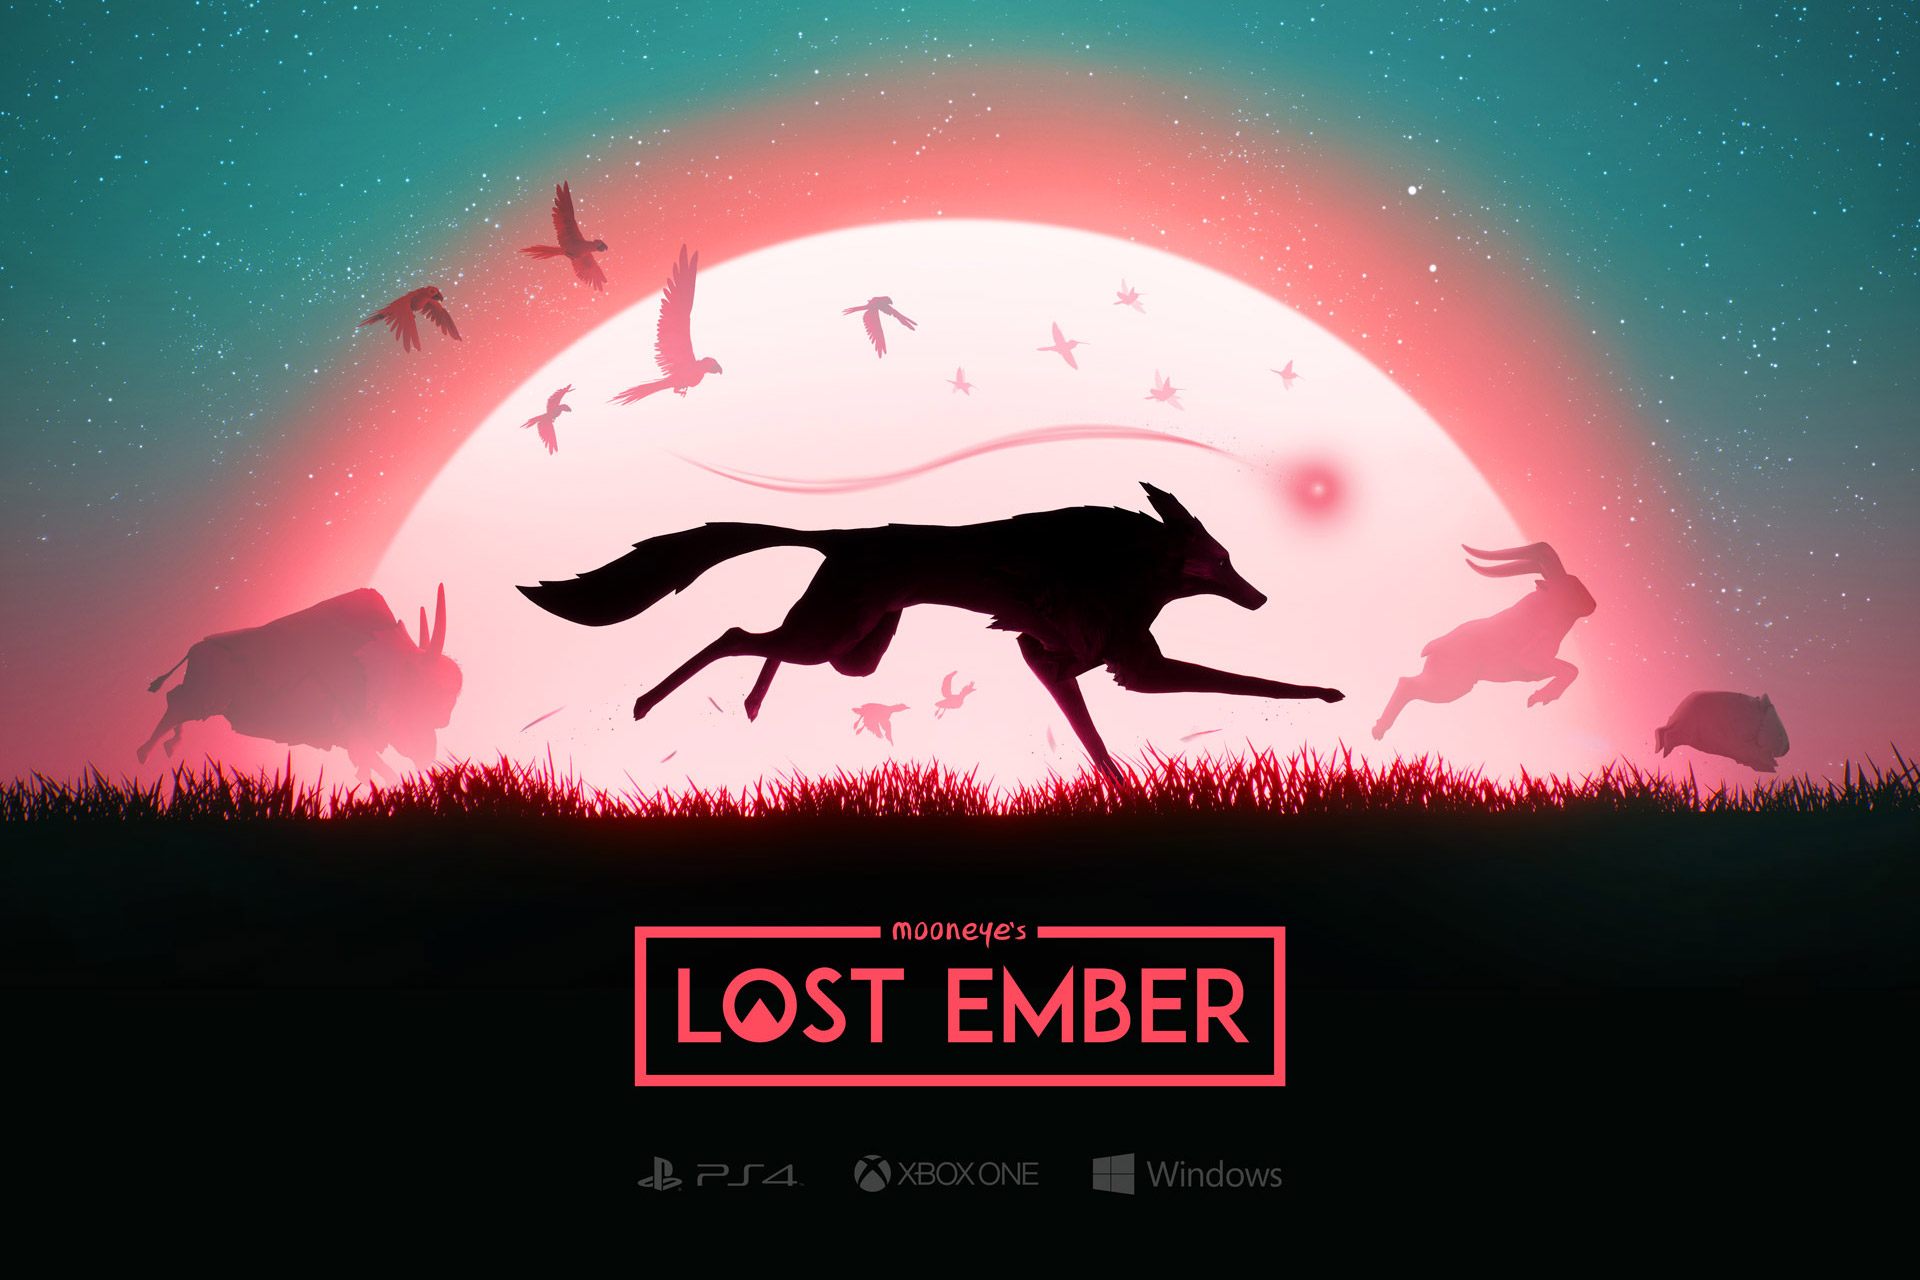 Ein Wolf, umgeben von silhouettenhaften Tieren, vor einer rot scheinenden Sonne. Die Darstellung ist eine Collage, die für das Spiel Lost Ember entworfen wurde.